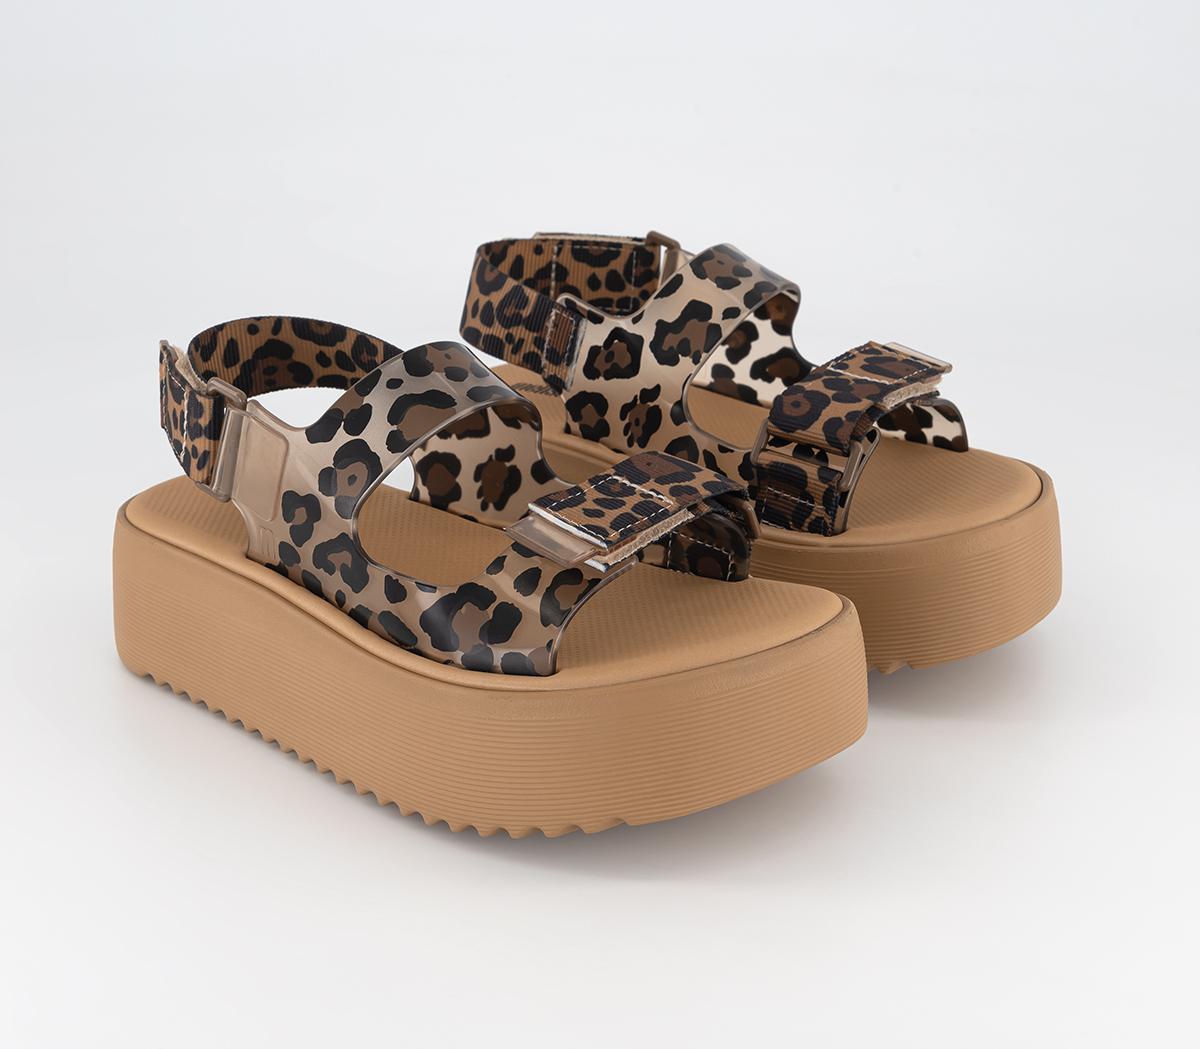 Melissa Womens Brave Papete Platform Sandals Tan Leopard, 7